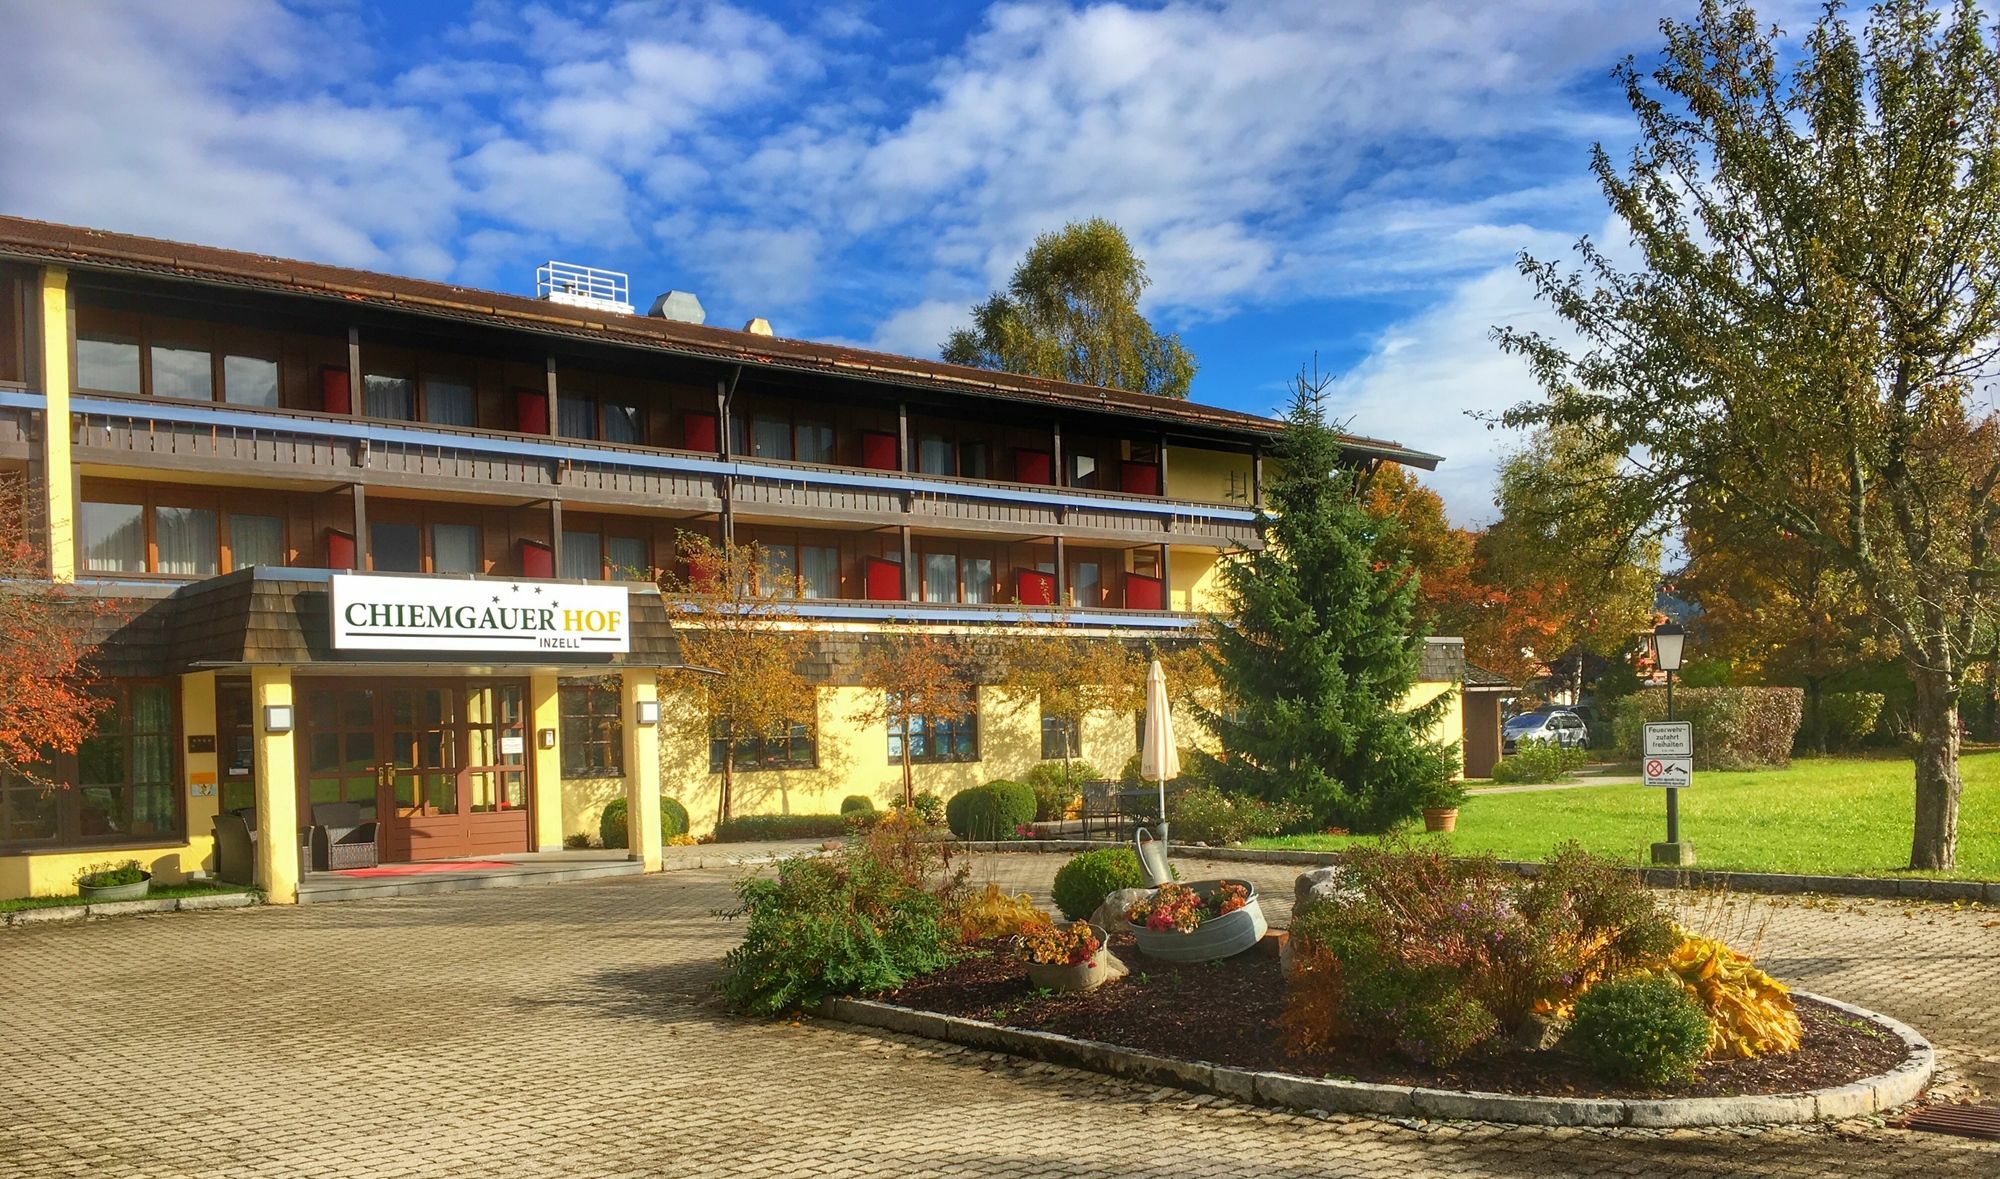 Das Wiesgauer - Alpenhotel Инцелль Экстерьер фото